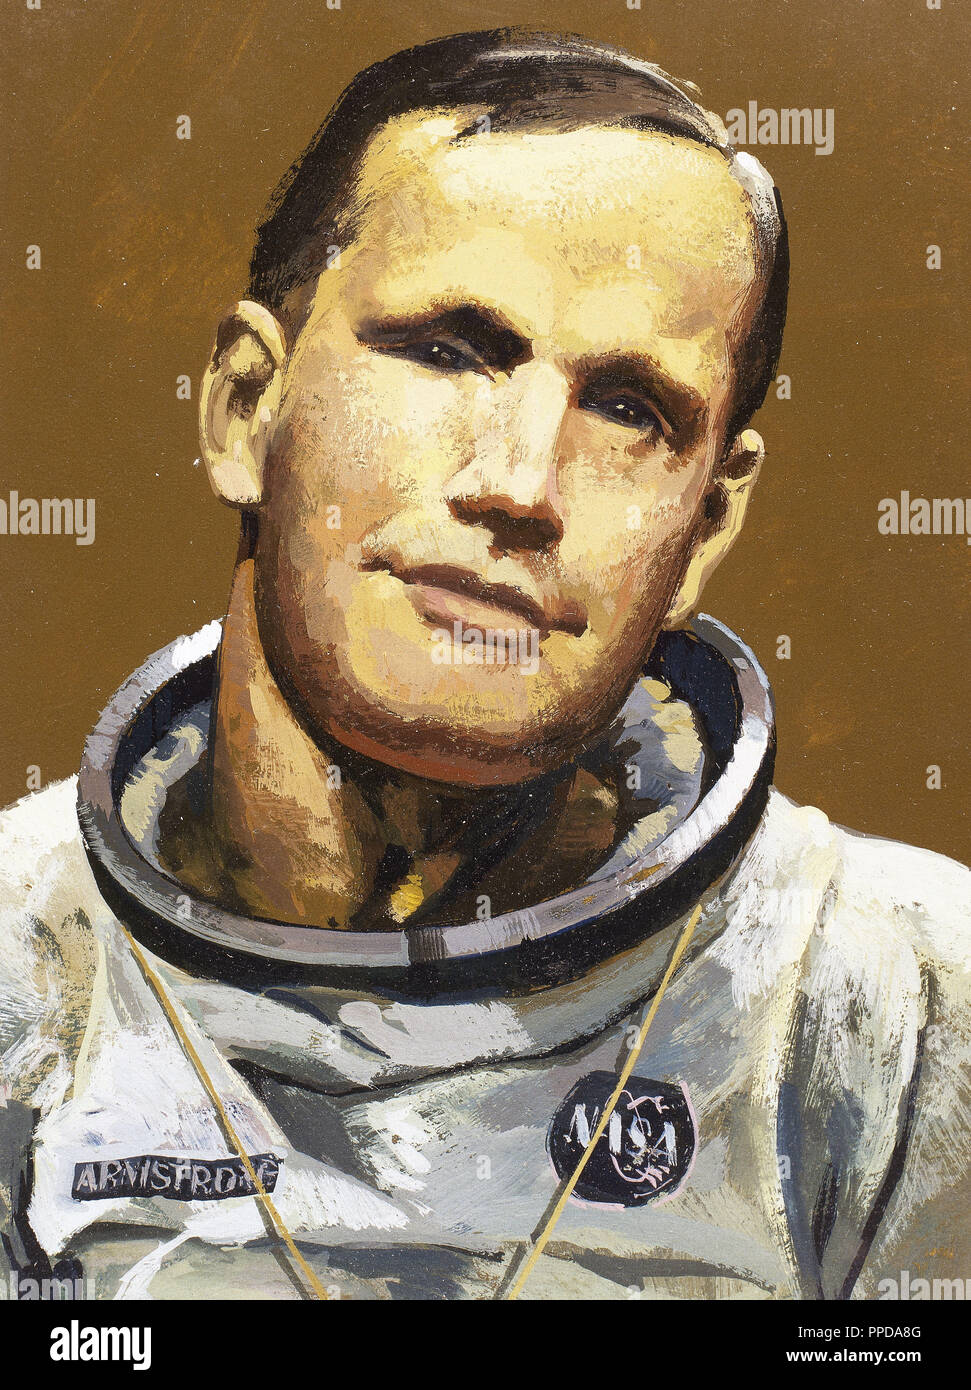 Armstrong, Neil (1930). Amerikanische Astronaut. Er nahm als Kommandant in der Lunar Mission "Apollo 11" und war der erste Mann, der auf dem Mond (20-7-1969). Stockfoto